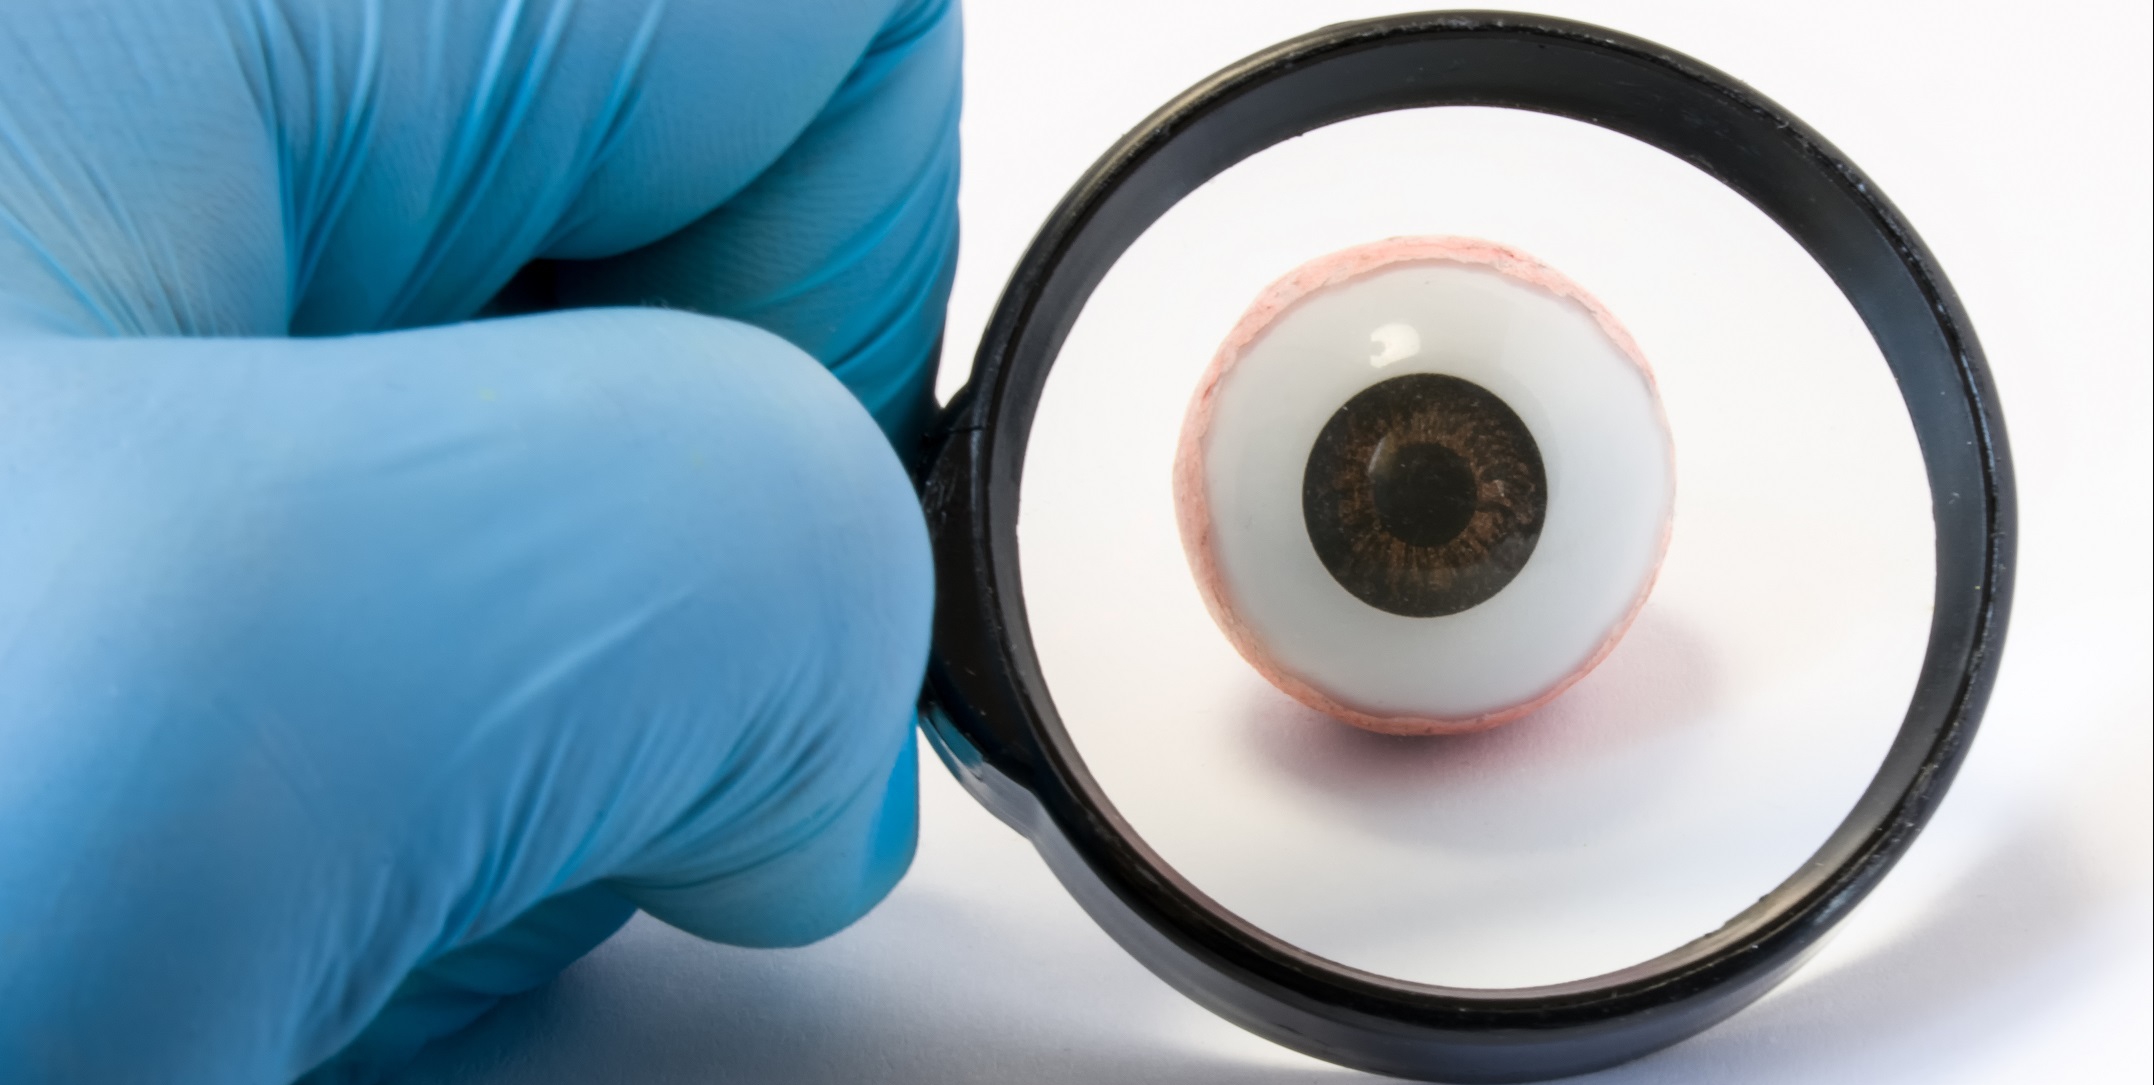 Wil jij ook een sterke positie voor de optometrist in de oogzorg? 